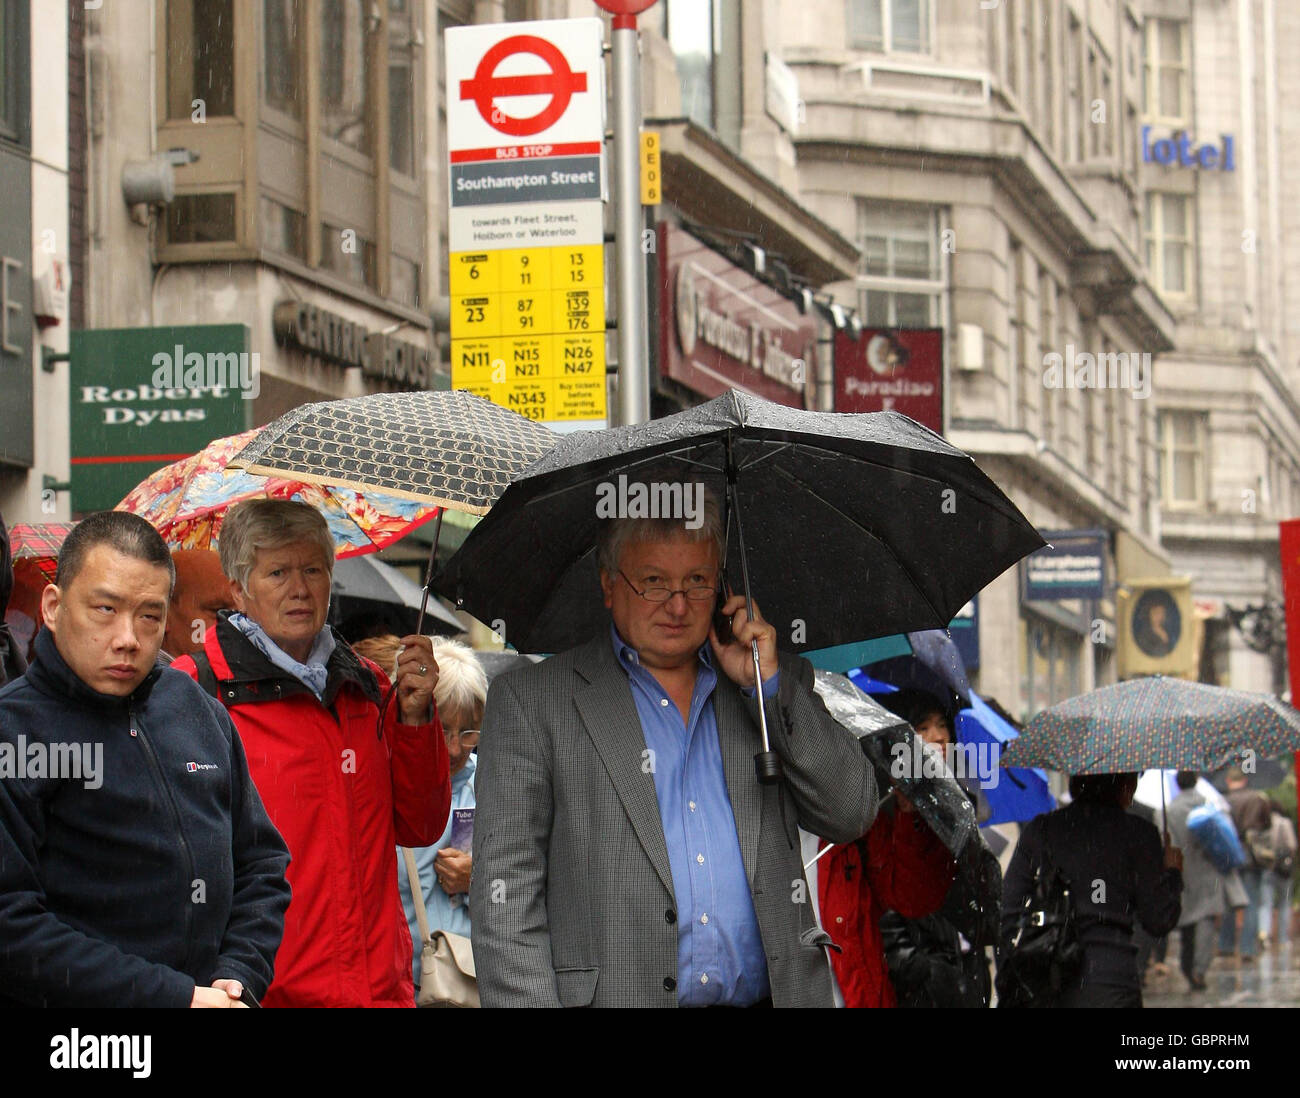 La gente si rifugia sotto gli ombrelloni mentre attendono un autobus sullo Strand nel centro di Londra, come uno sciopero di 48 ore da parte del sindacato RMT causa gravi danni alla metropolitana di Londra. Foto Stock